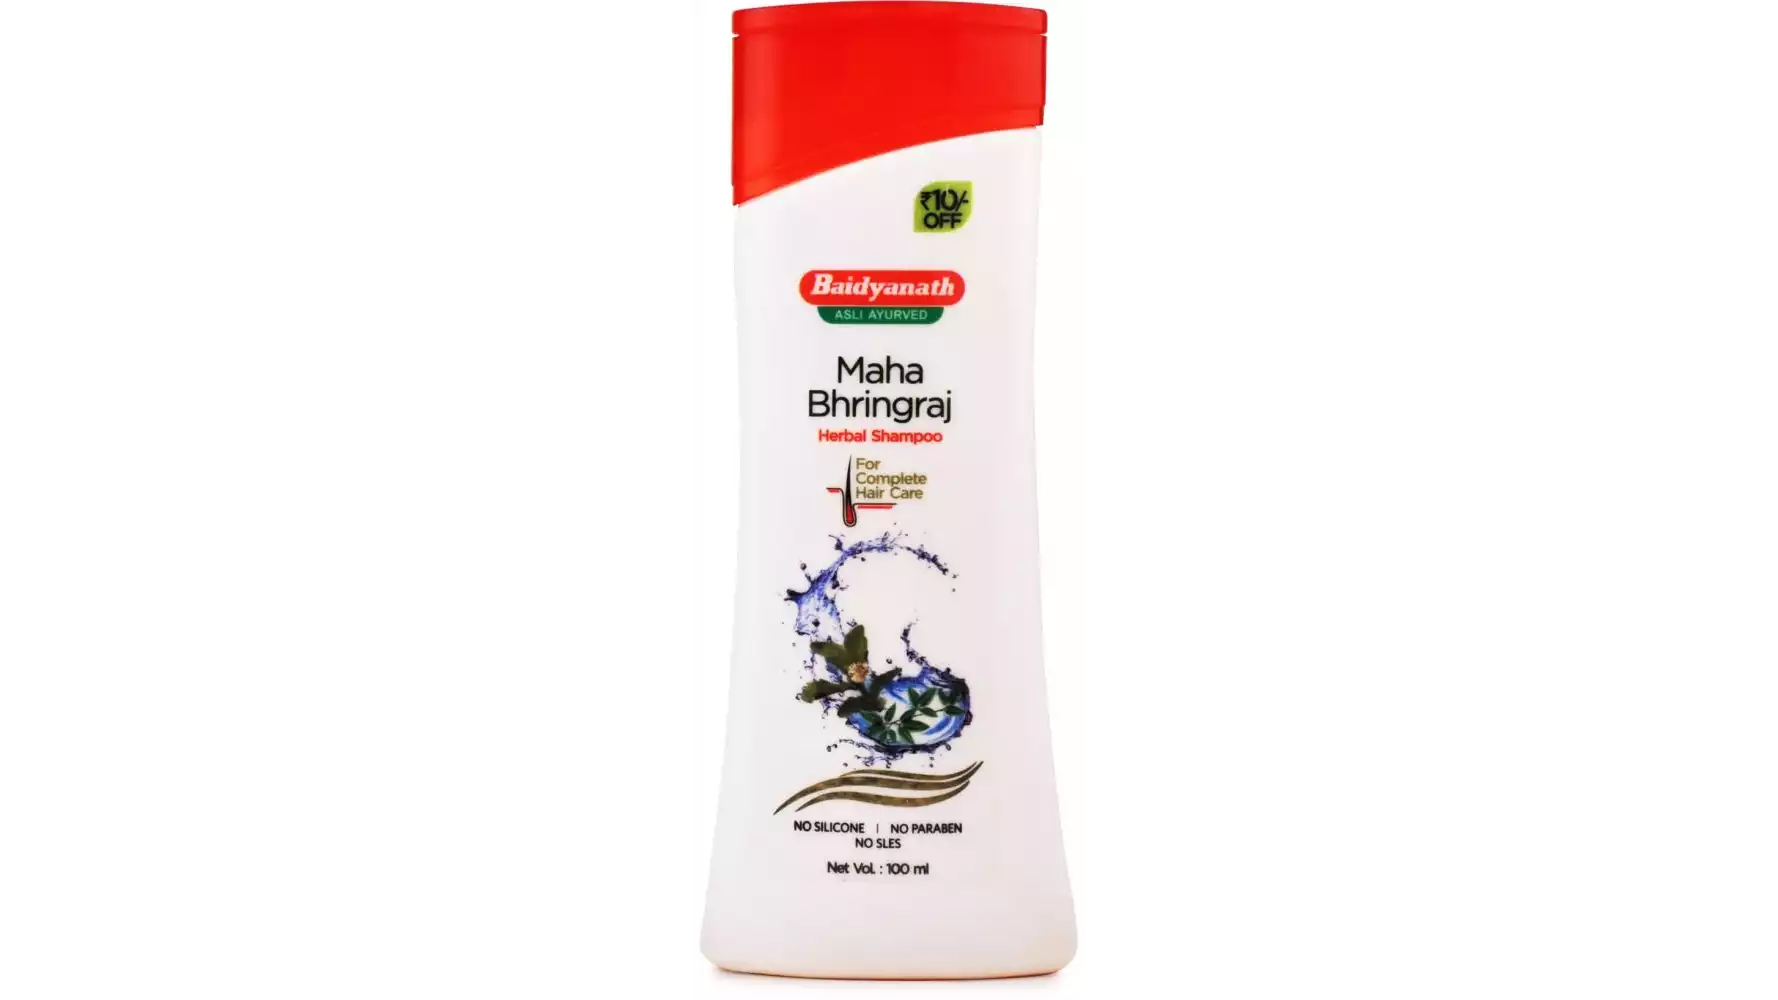 Baidyanath Mahabhringraj Herbal Shampoo (100ml)